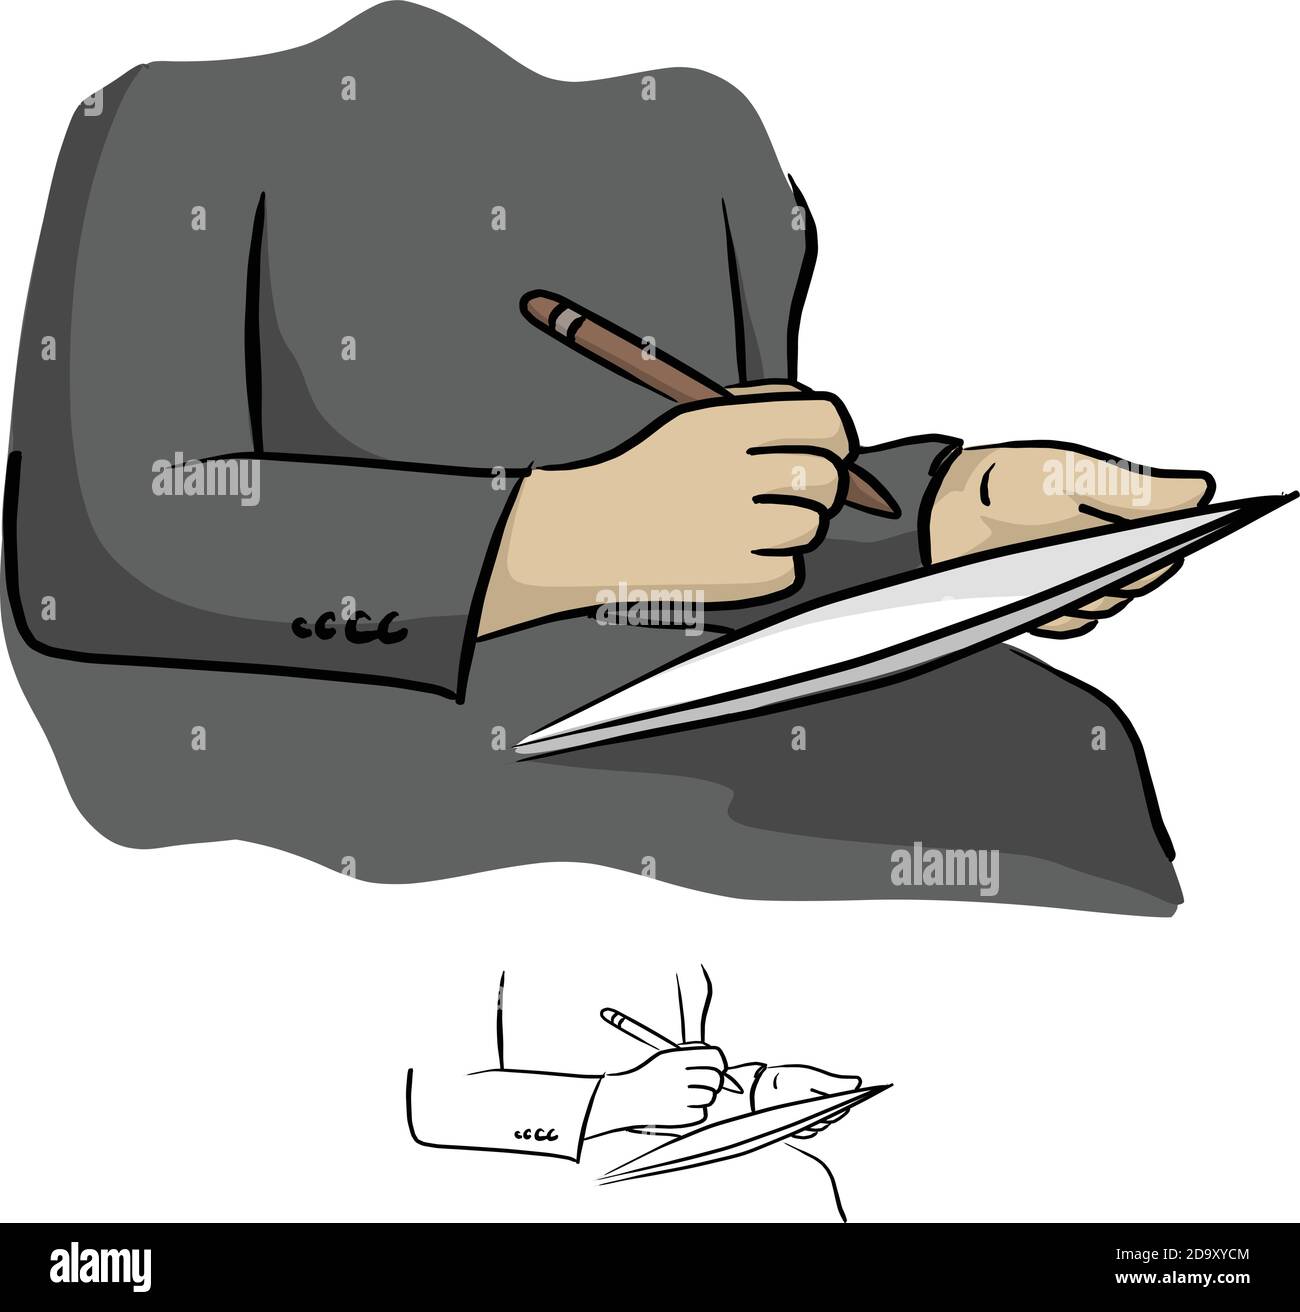 Scrittura manuale dello stilo digitale sul tablet del telefono immagine vettoriale schizzo doodle mano disegnata con linee nere isolate su bianco sfondo Illustrazione Vettoriale